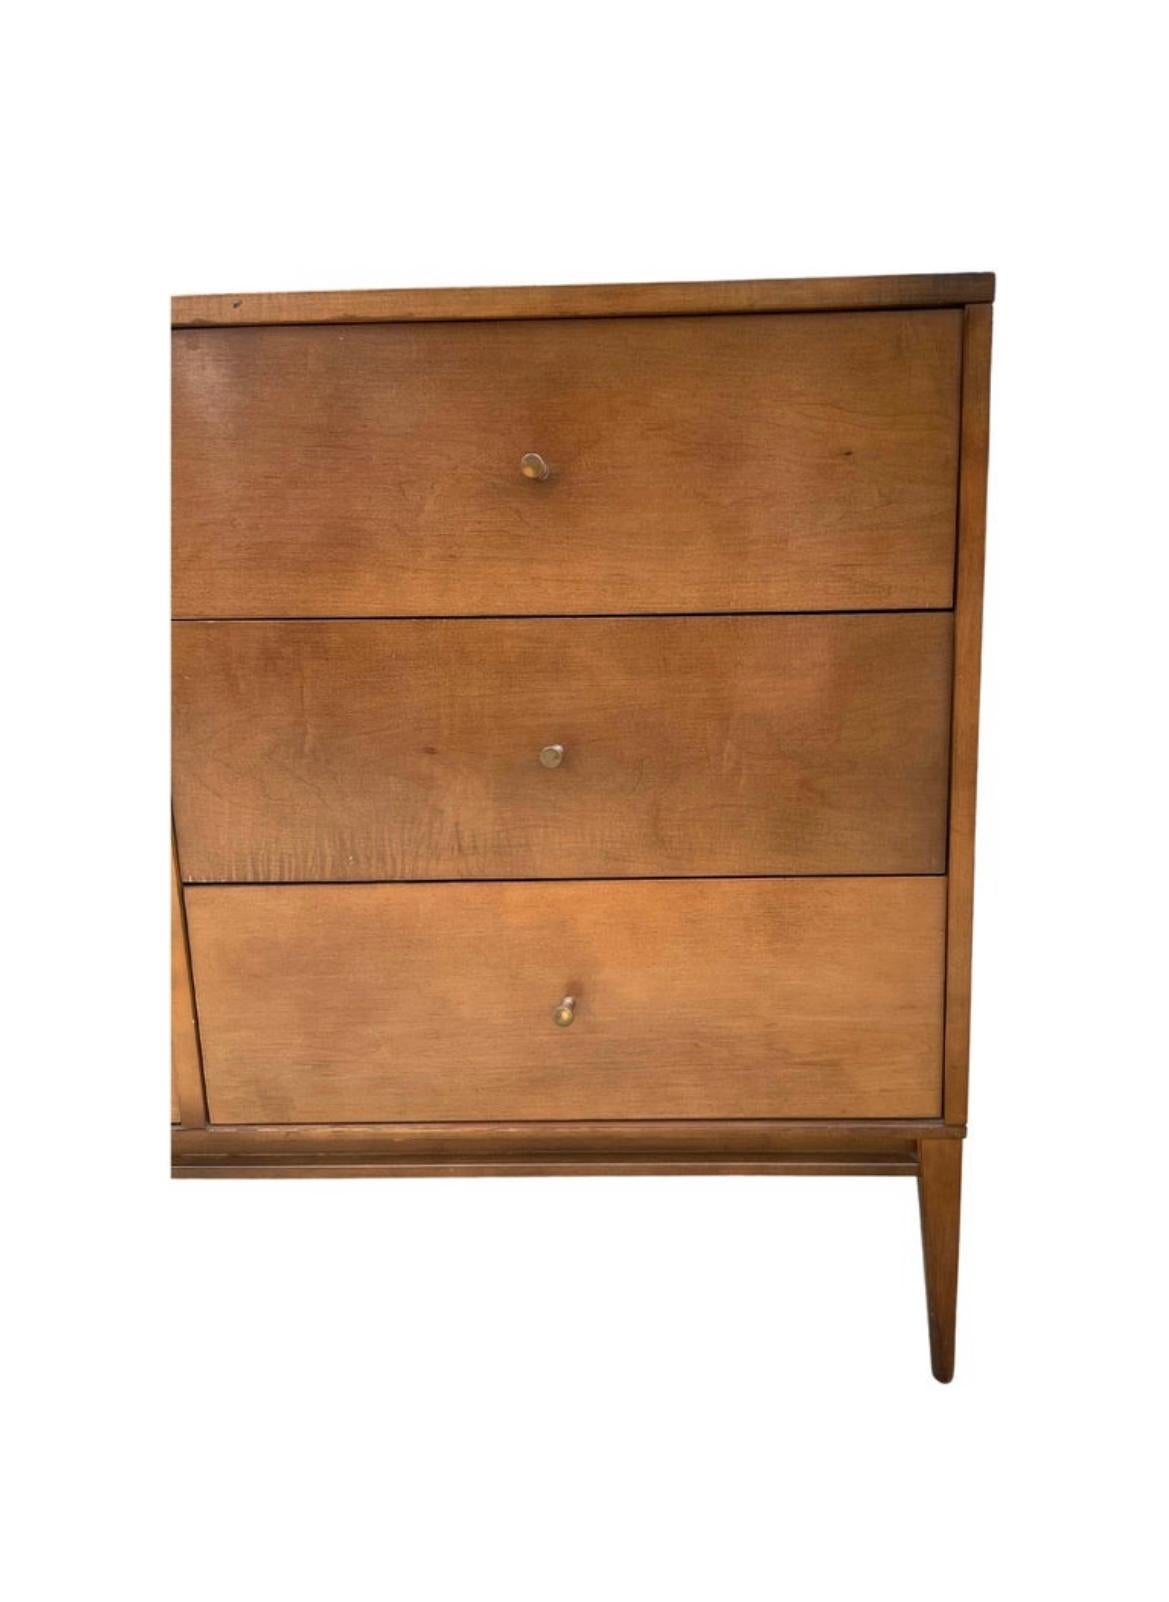 Woodwork Midcentury Paul McCobb 6 Drawer Dresser Credenza #1509 Walnut finish Brass pulls